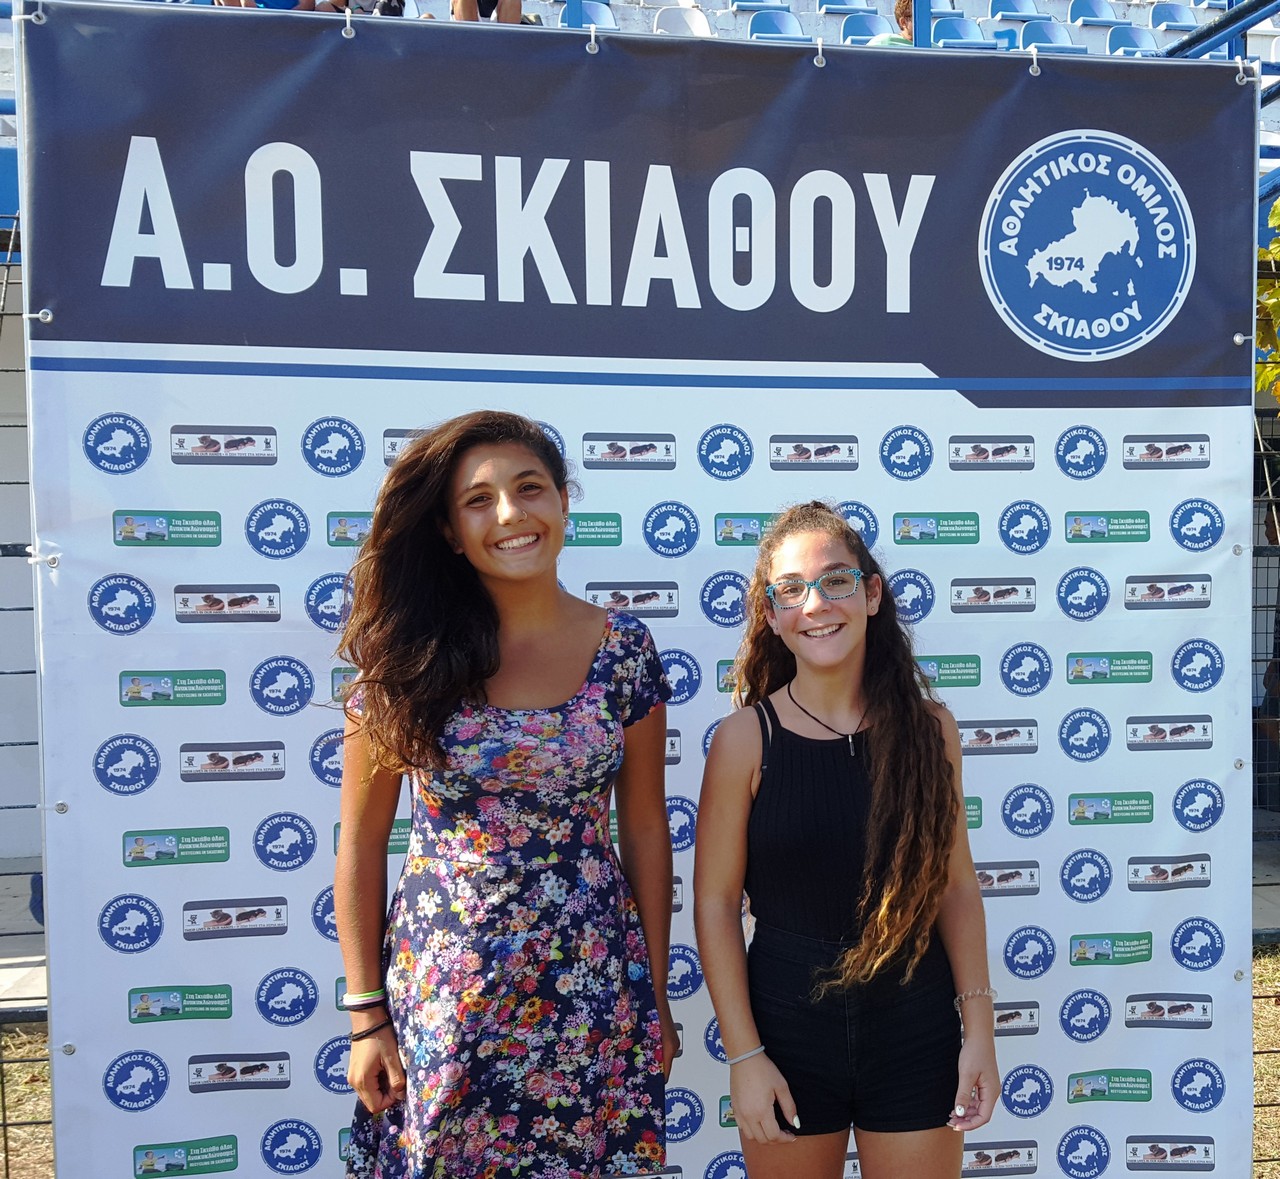 Δύο κορίτσια από την ομάδα ποδοσφαίρου του ΑΟ Σκιάθου φωτογραφίζονται στο banner της αγαπημενης τους ομάδας